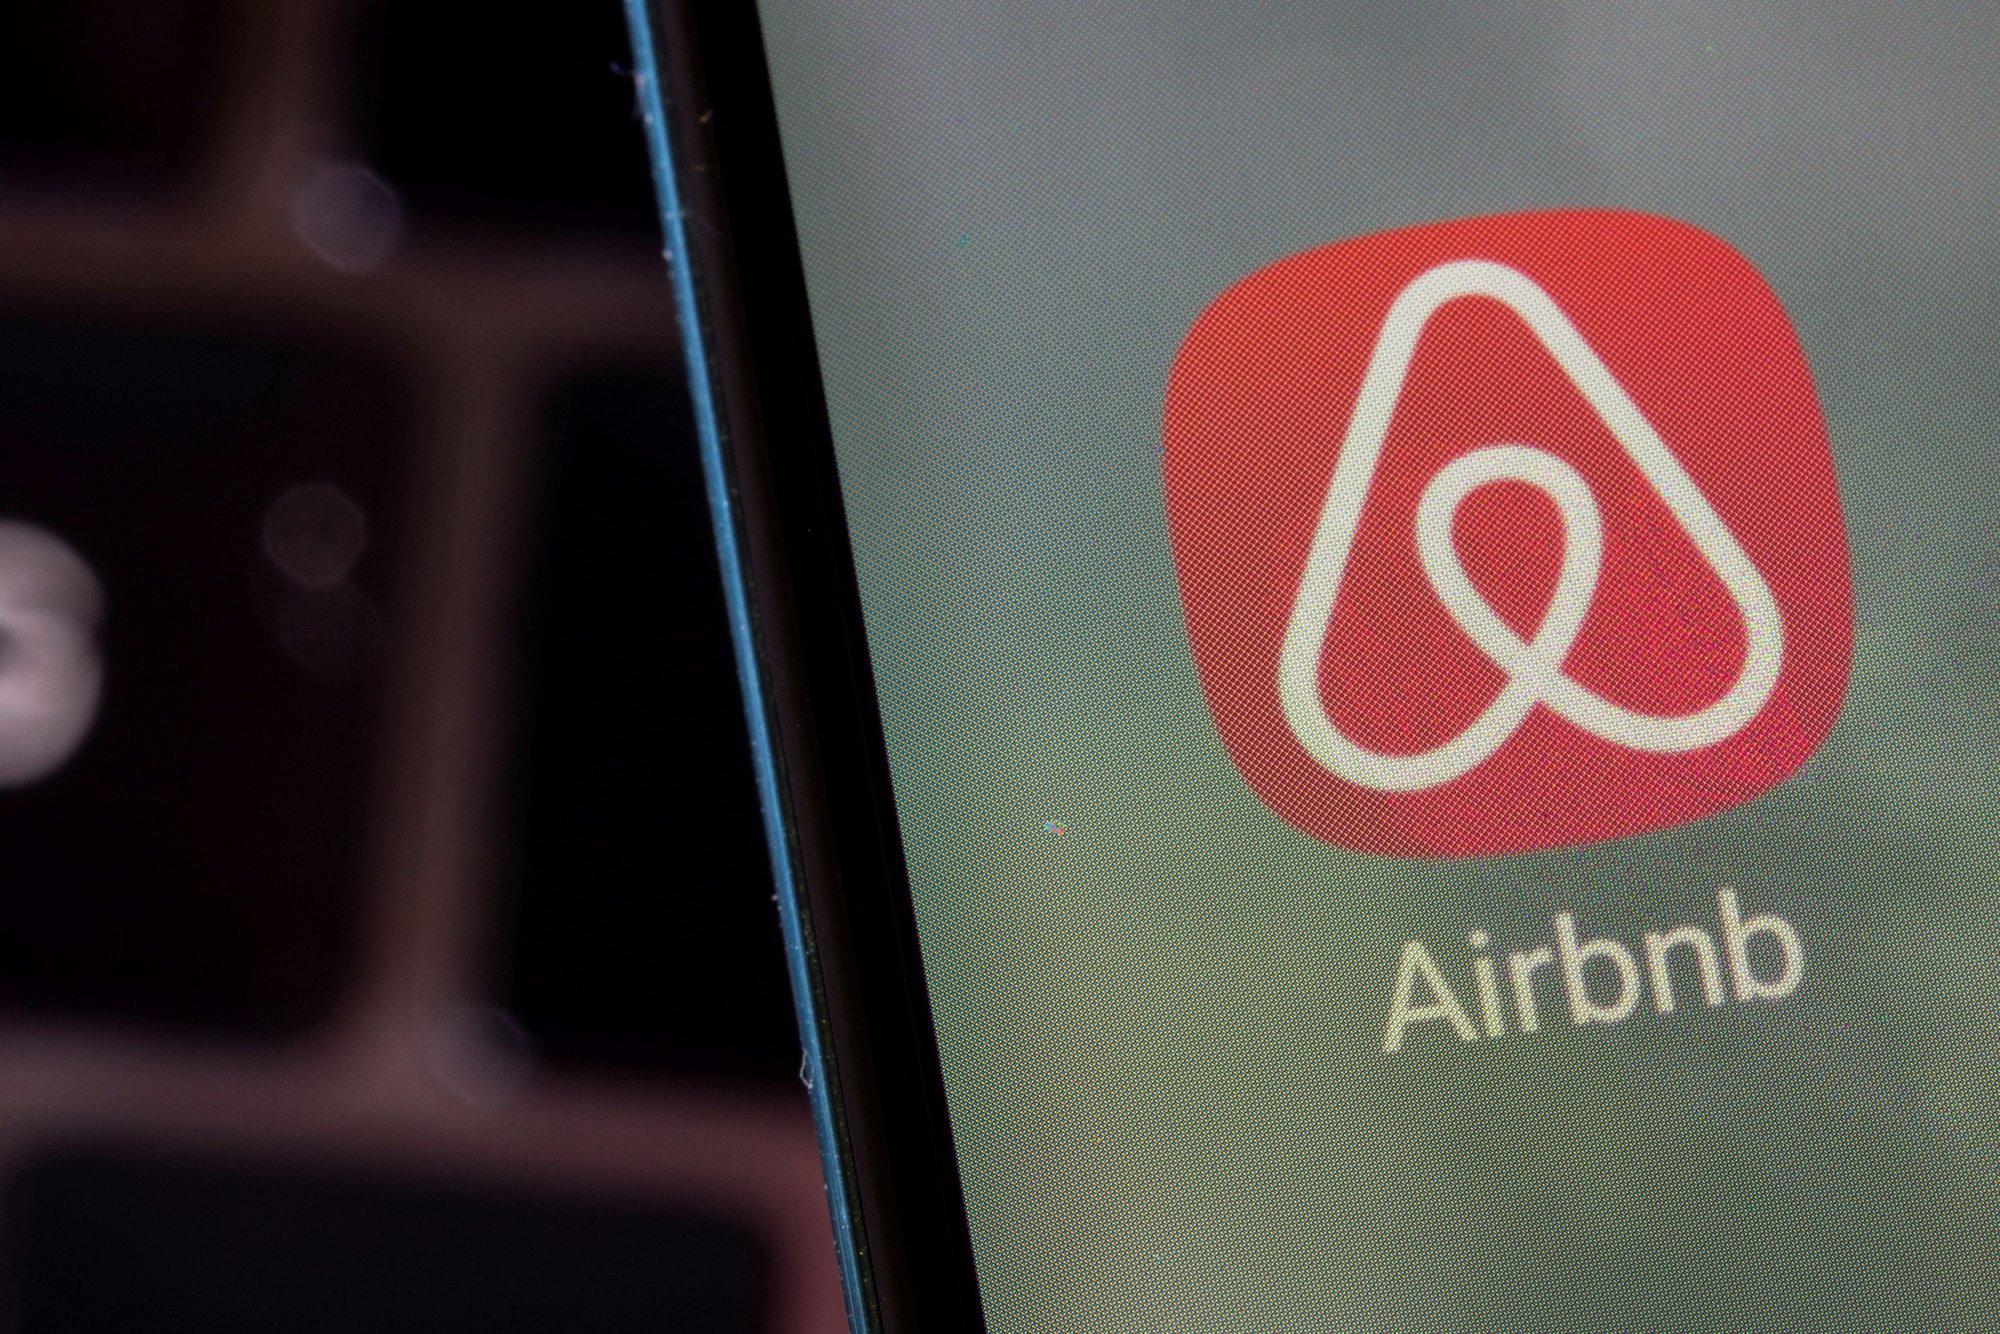 Airbnb: Πώς φέσωσαν τον ιδιοκτήτη με 3.500 ευρώ καλώντας στην Κίνα μέσω internet